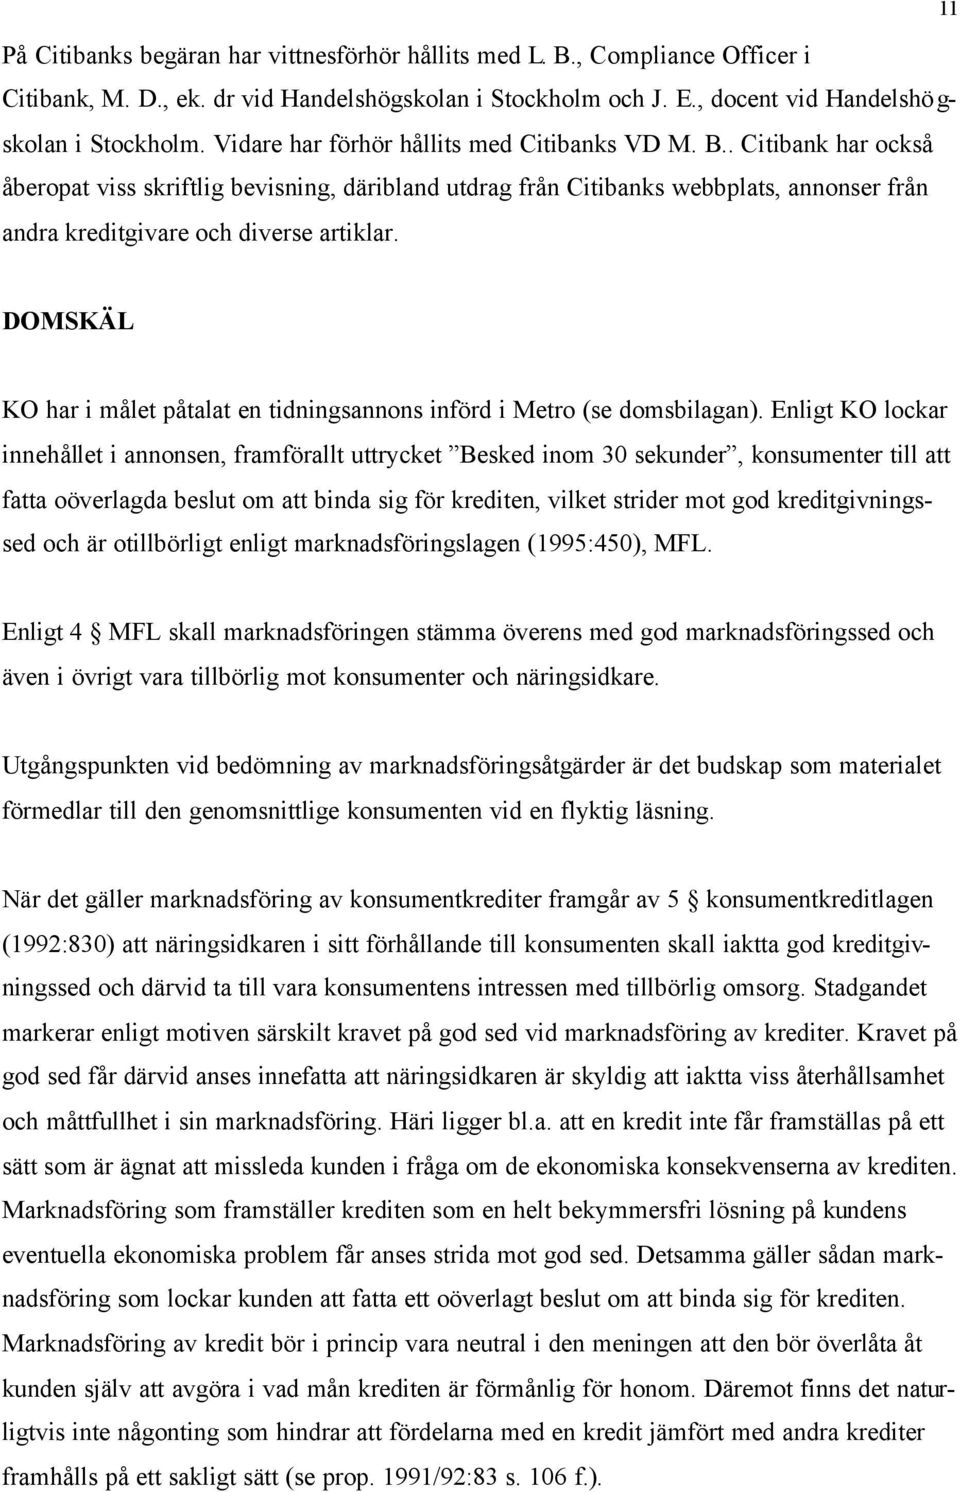 11 DOMSKÄL KO har i målet påtalat en tidningsannons införd i Metro (se domsbilagan).